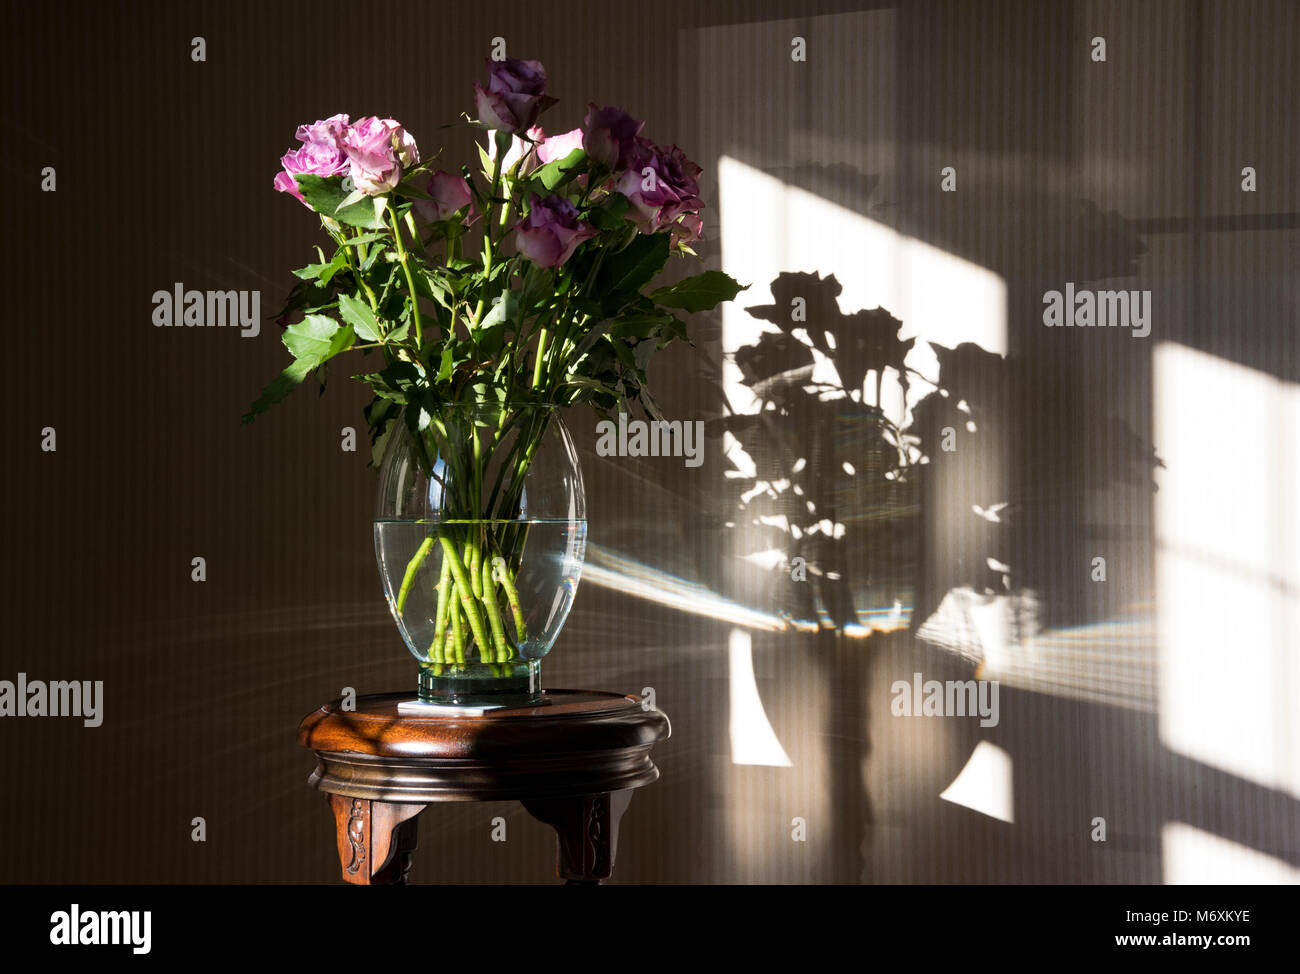 Eine Vase mit Rosen in der Nähe eines Fensters mit Schatten, Hanbury, Tutbury, Burton upon Trent, Staffordshire. Großbritannien Stockfoto